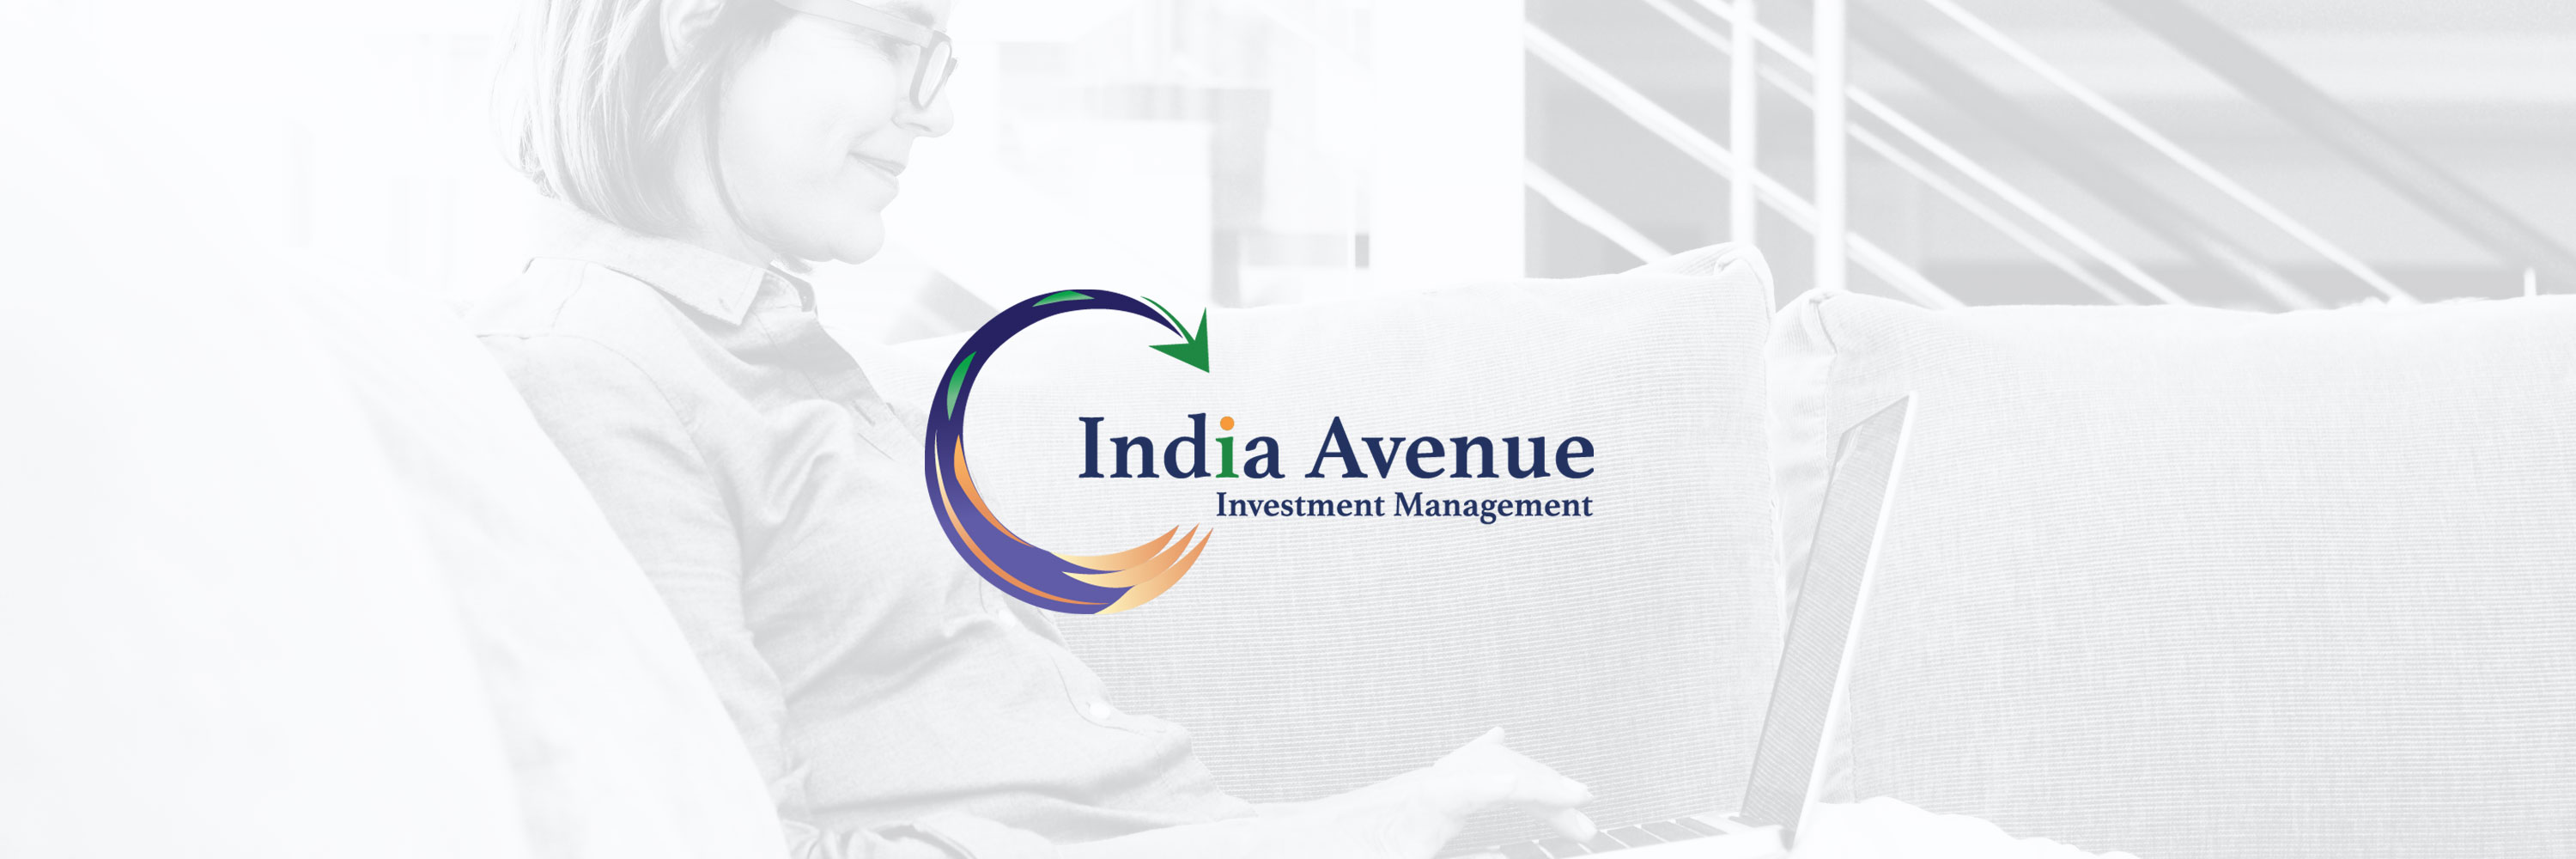 India Avenue Investment Management